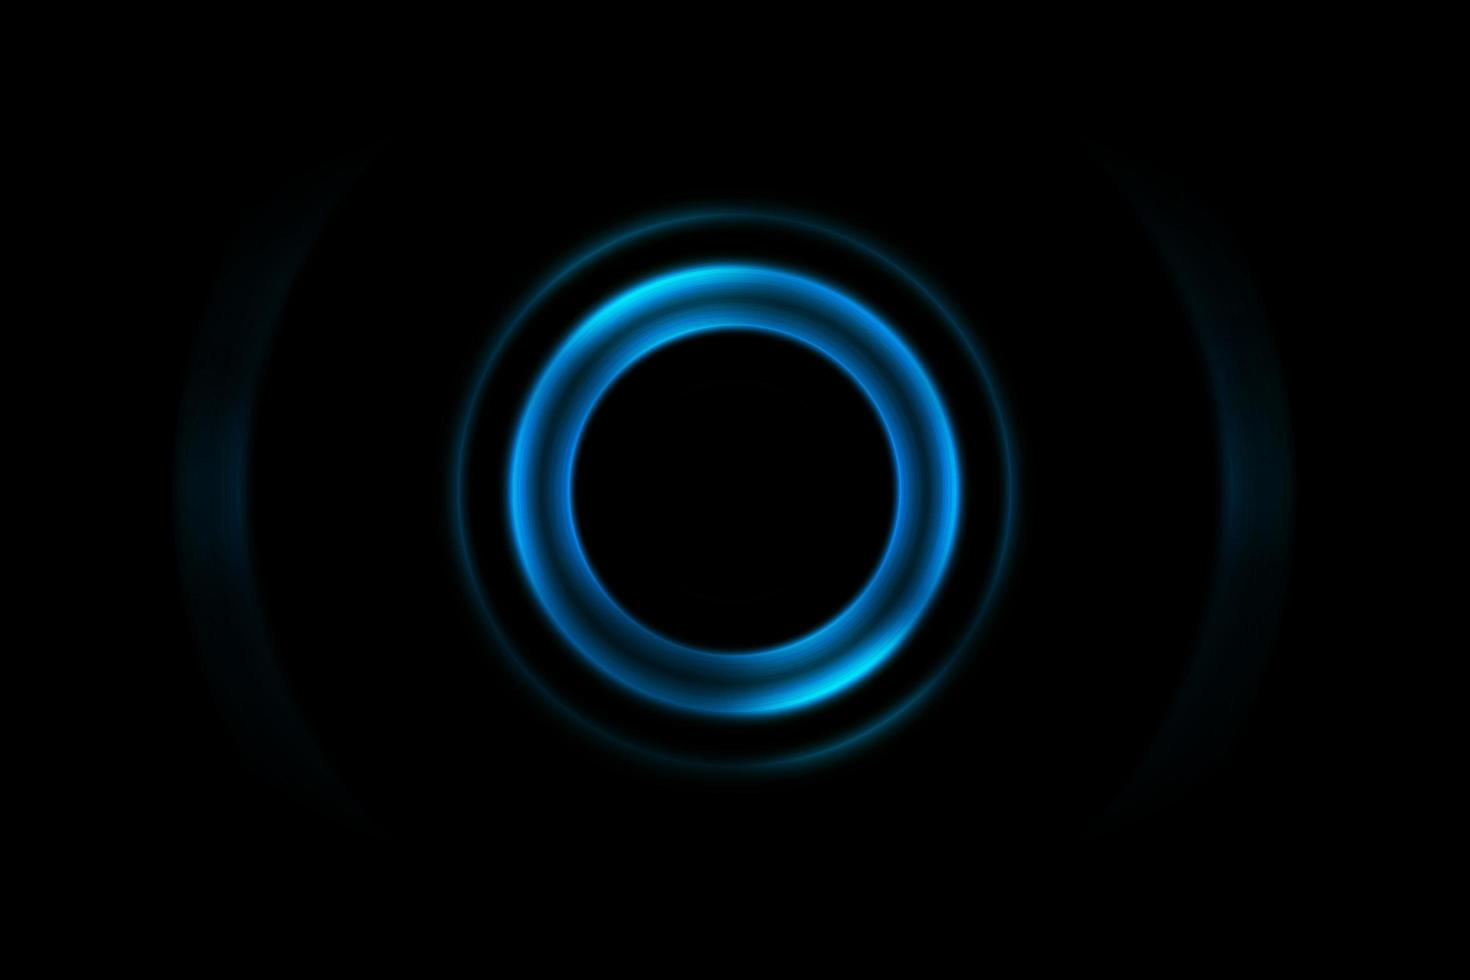 abstrakter hellblauer Ring mit oszillierendem Hintergrund der Schallwellen foto